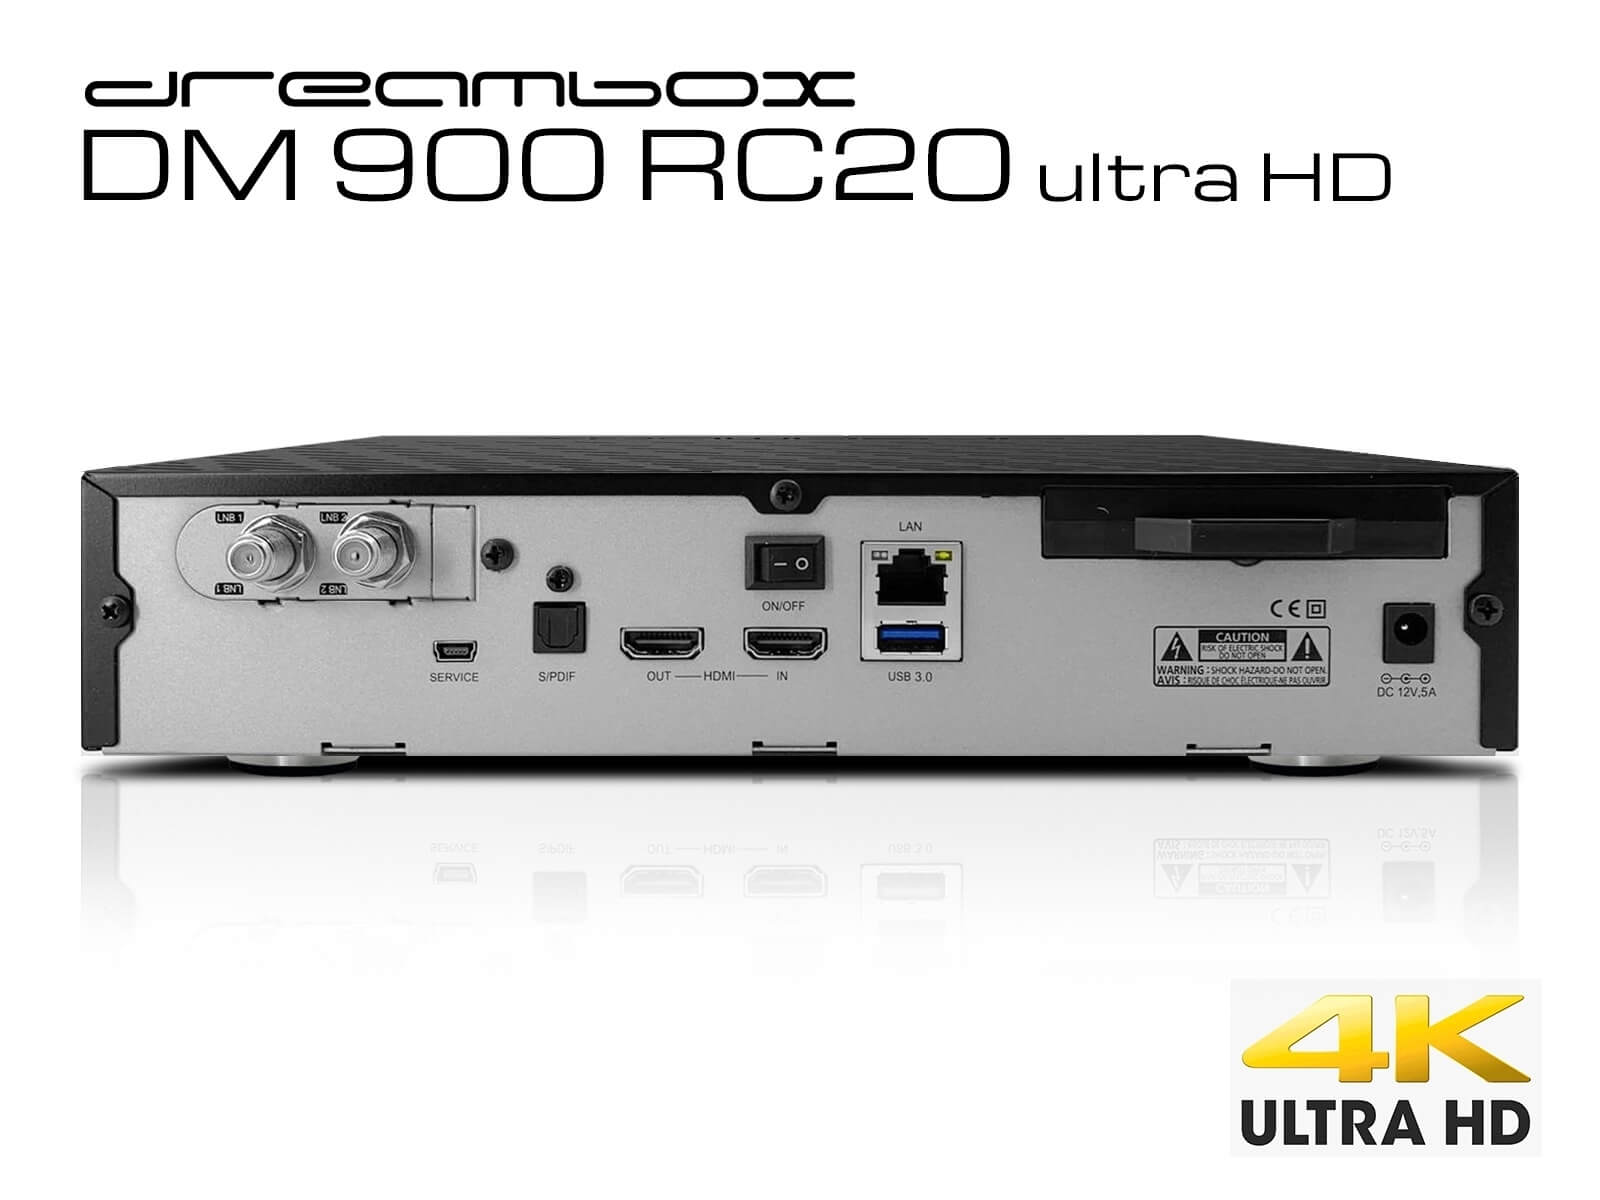 Dreambox DM9000 RC20 - ny Dreambox - billig og bedre